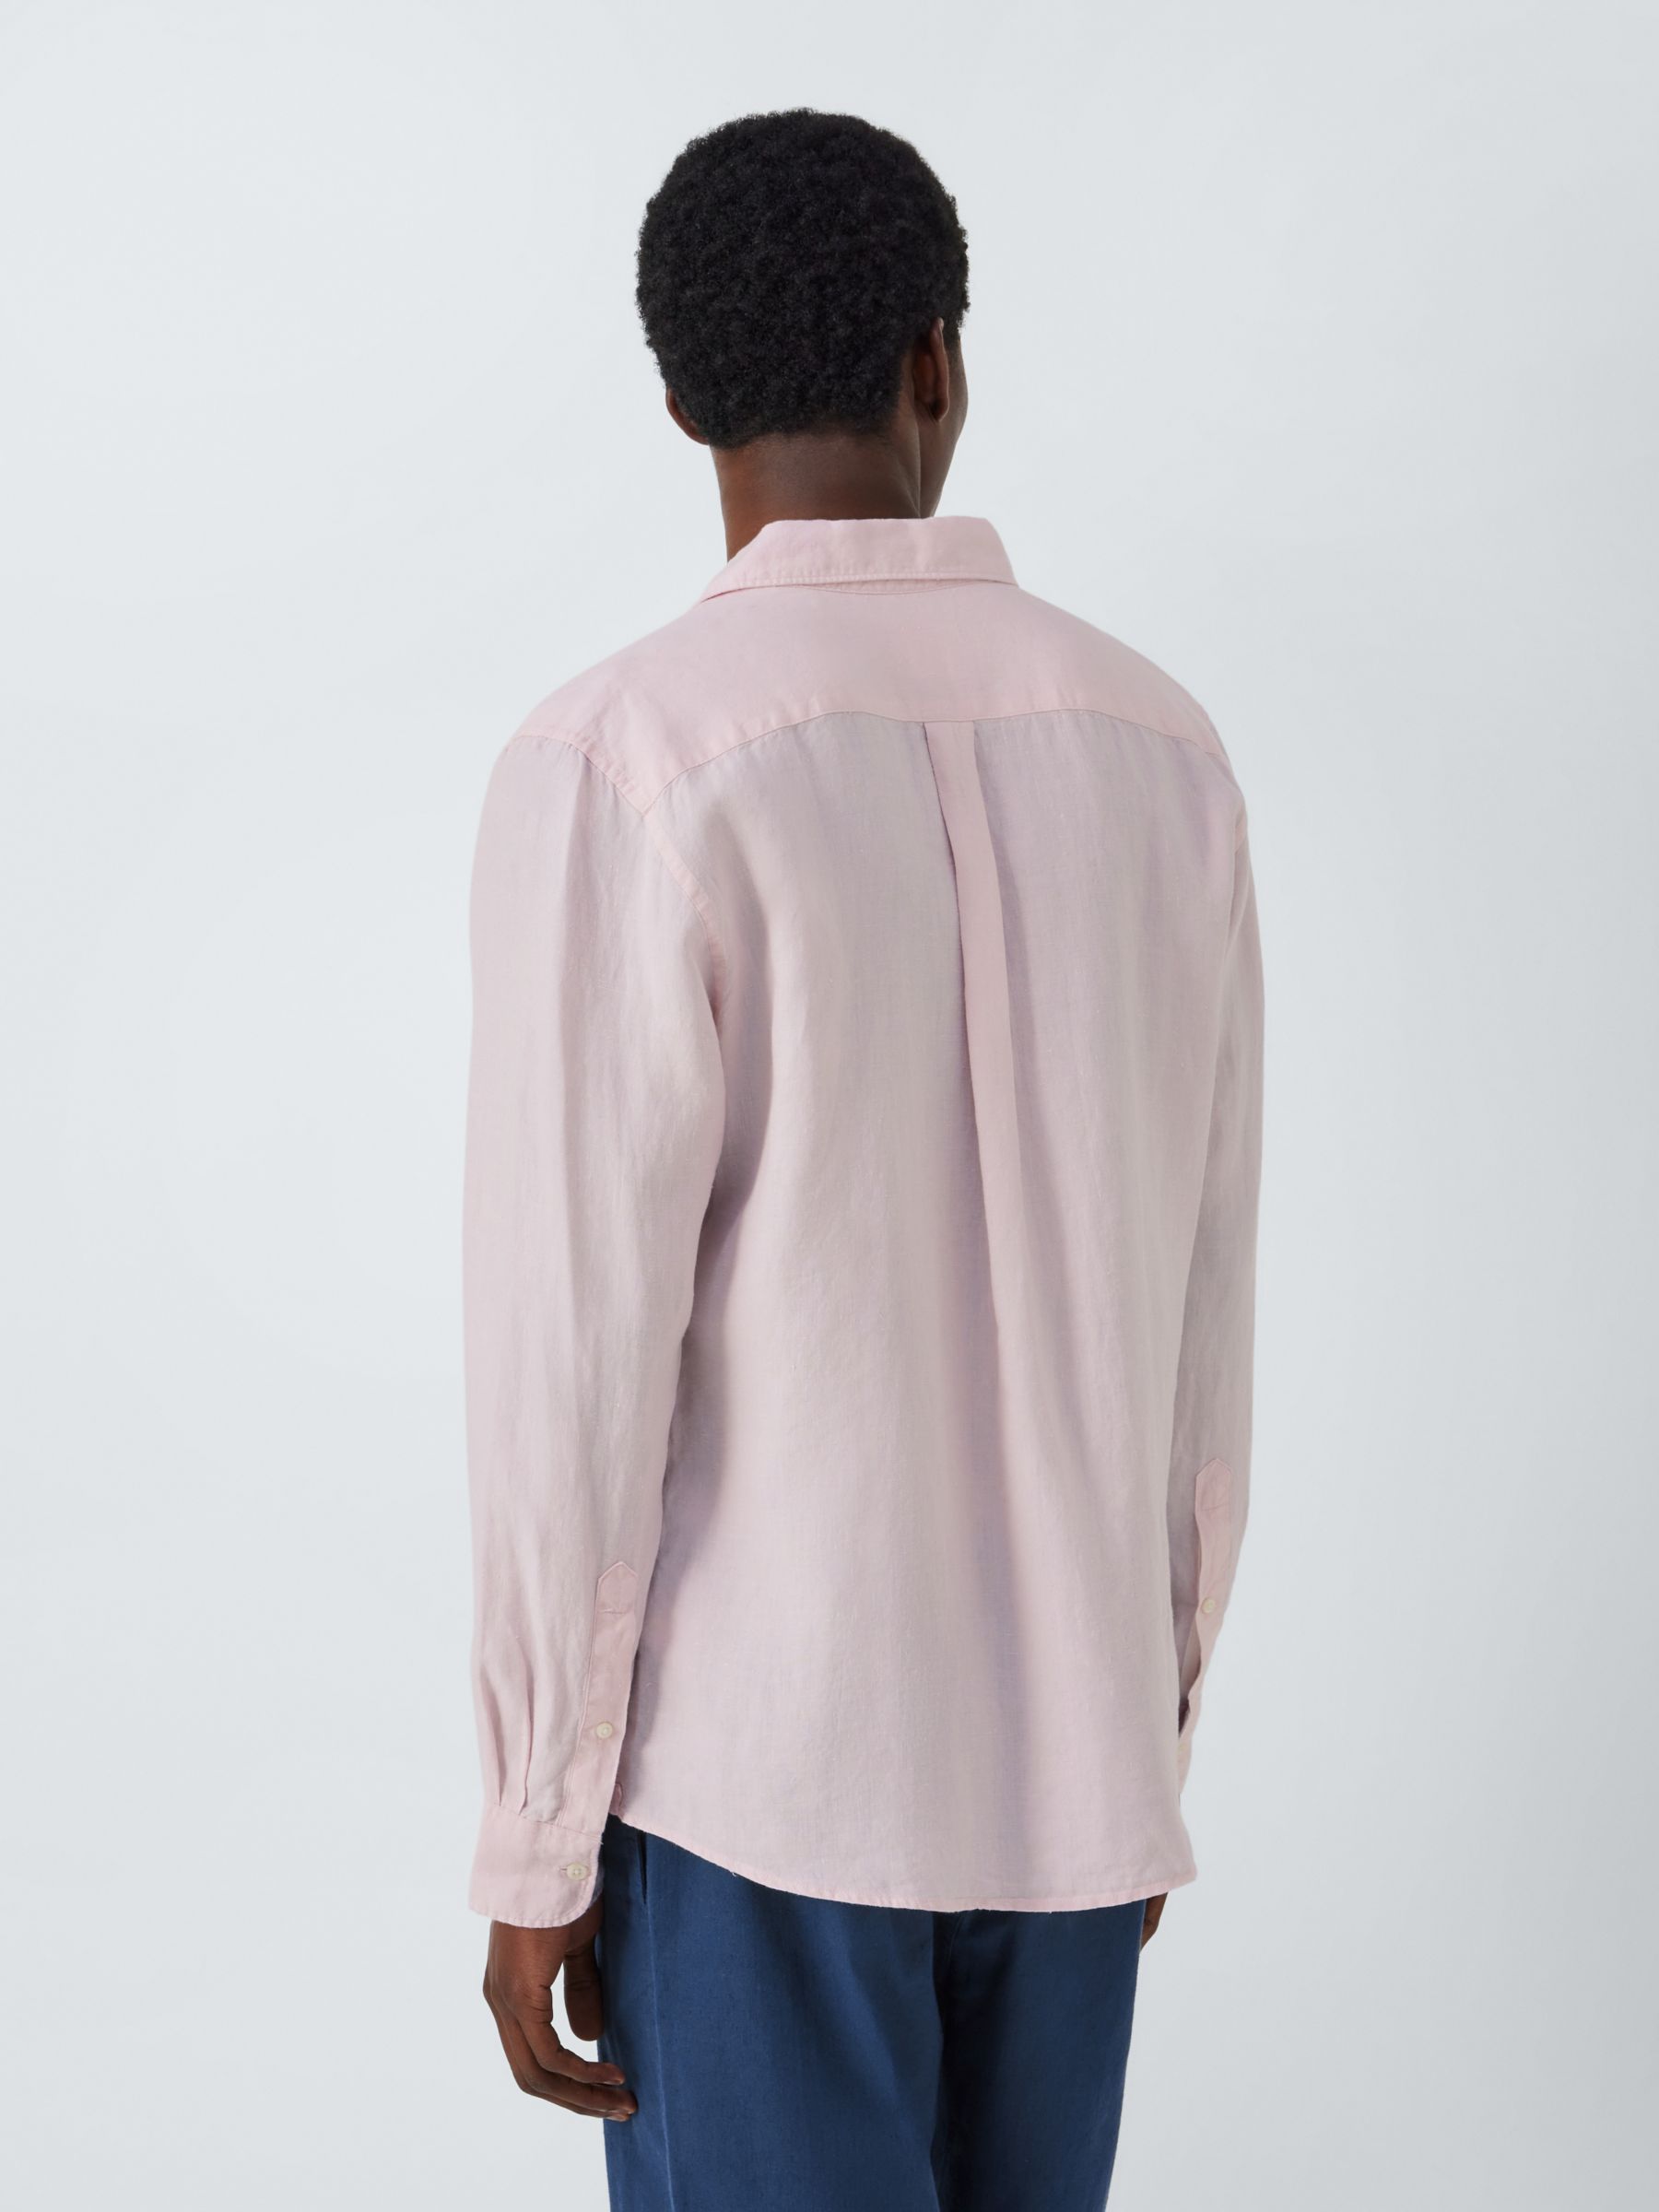 John Lewis Linen Long Sleeve Shirt, Pink, S